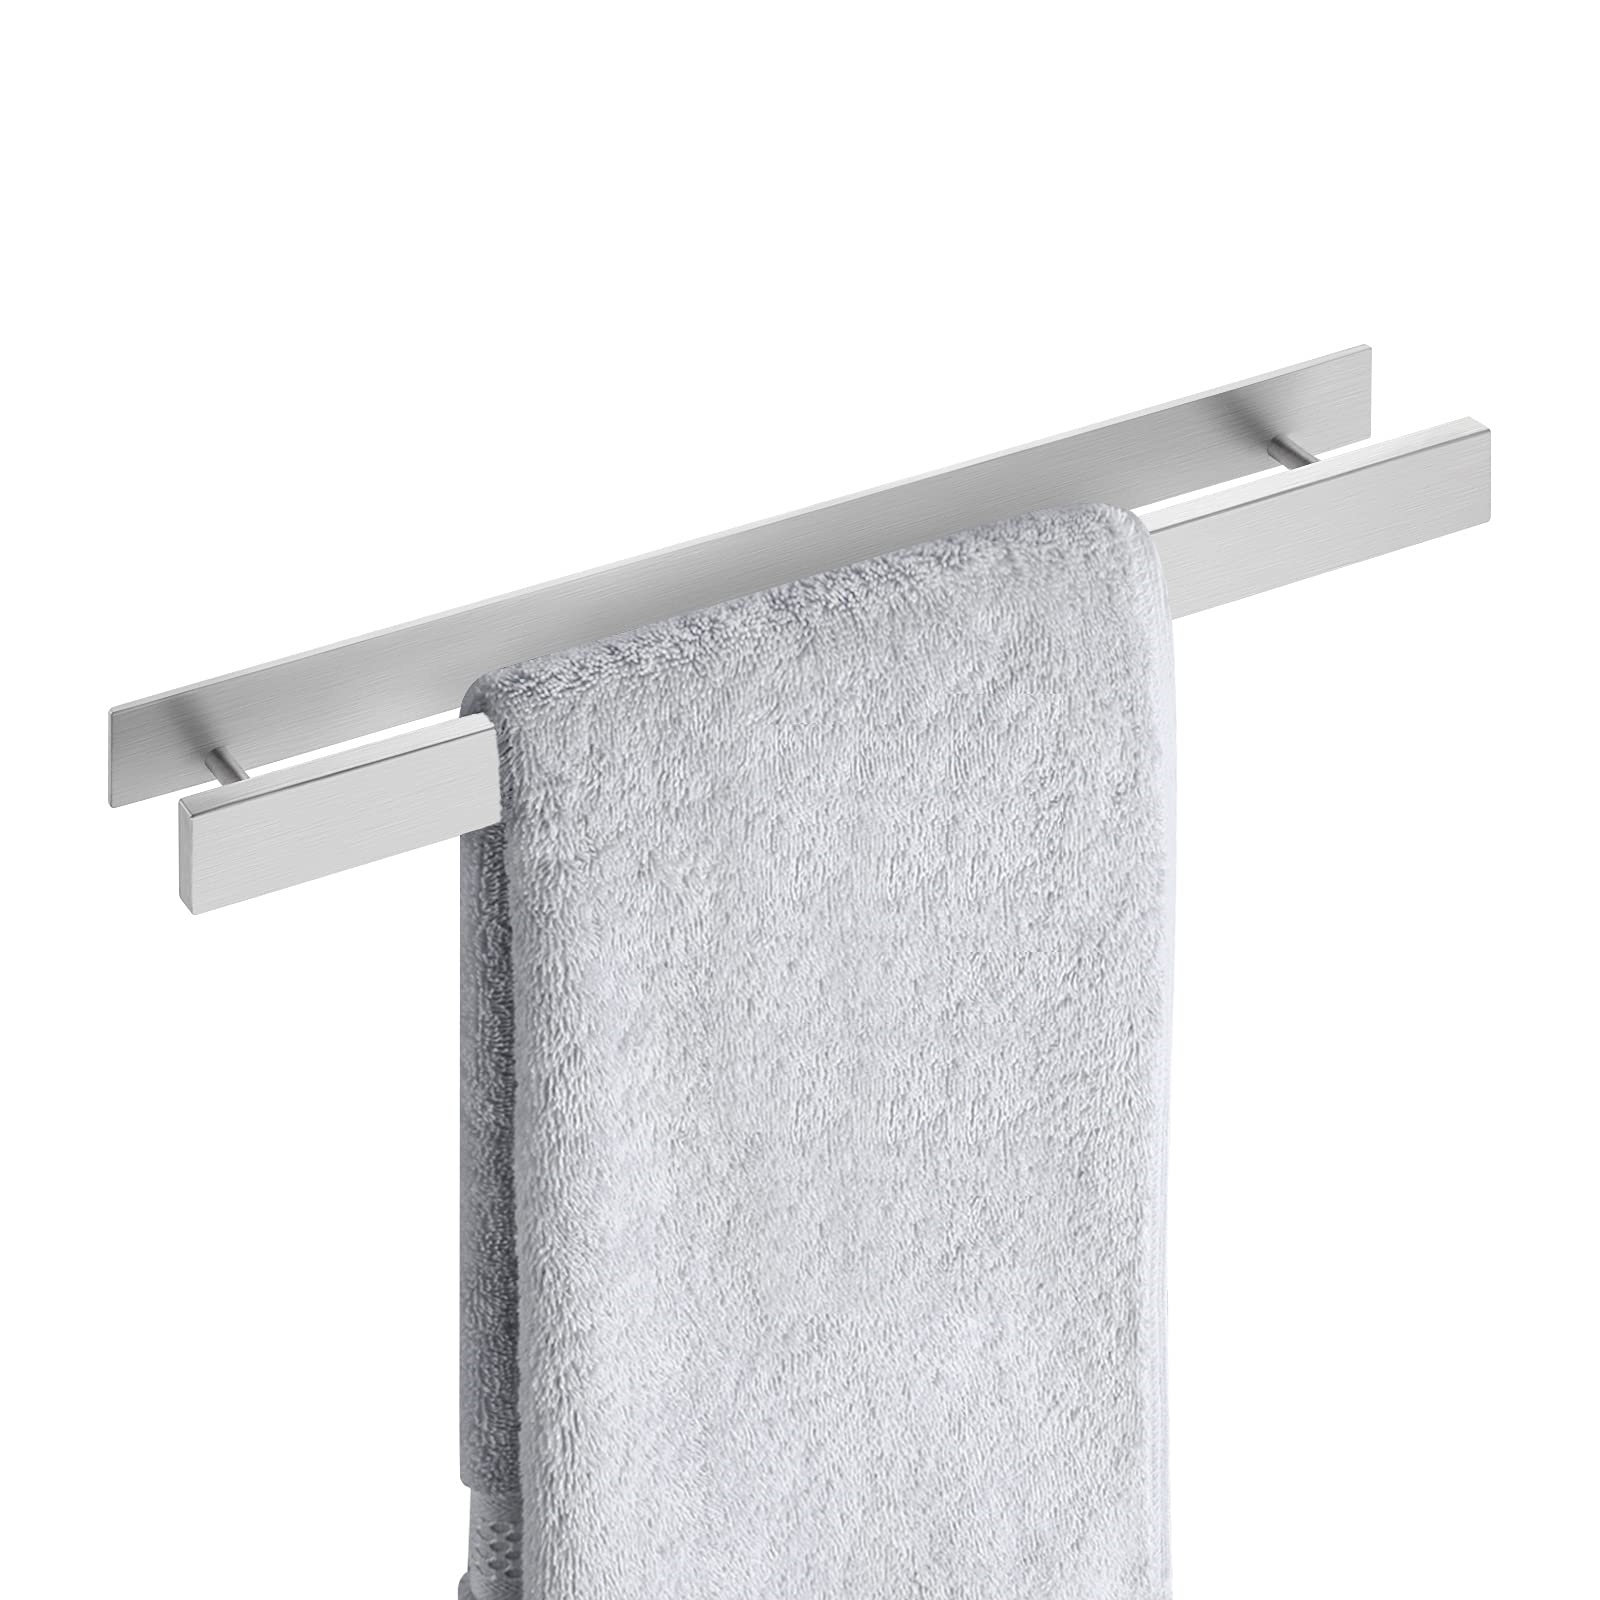 Stainless Steel Over Door Towel Rack Hanging Towel Bar No Drilling Towel Holder Waterproof and Rust-Proof Towel Rack Organizer Kitchen Accessories for Home Bathroom Kitchen Cabinet Door